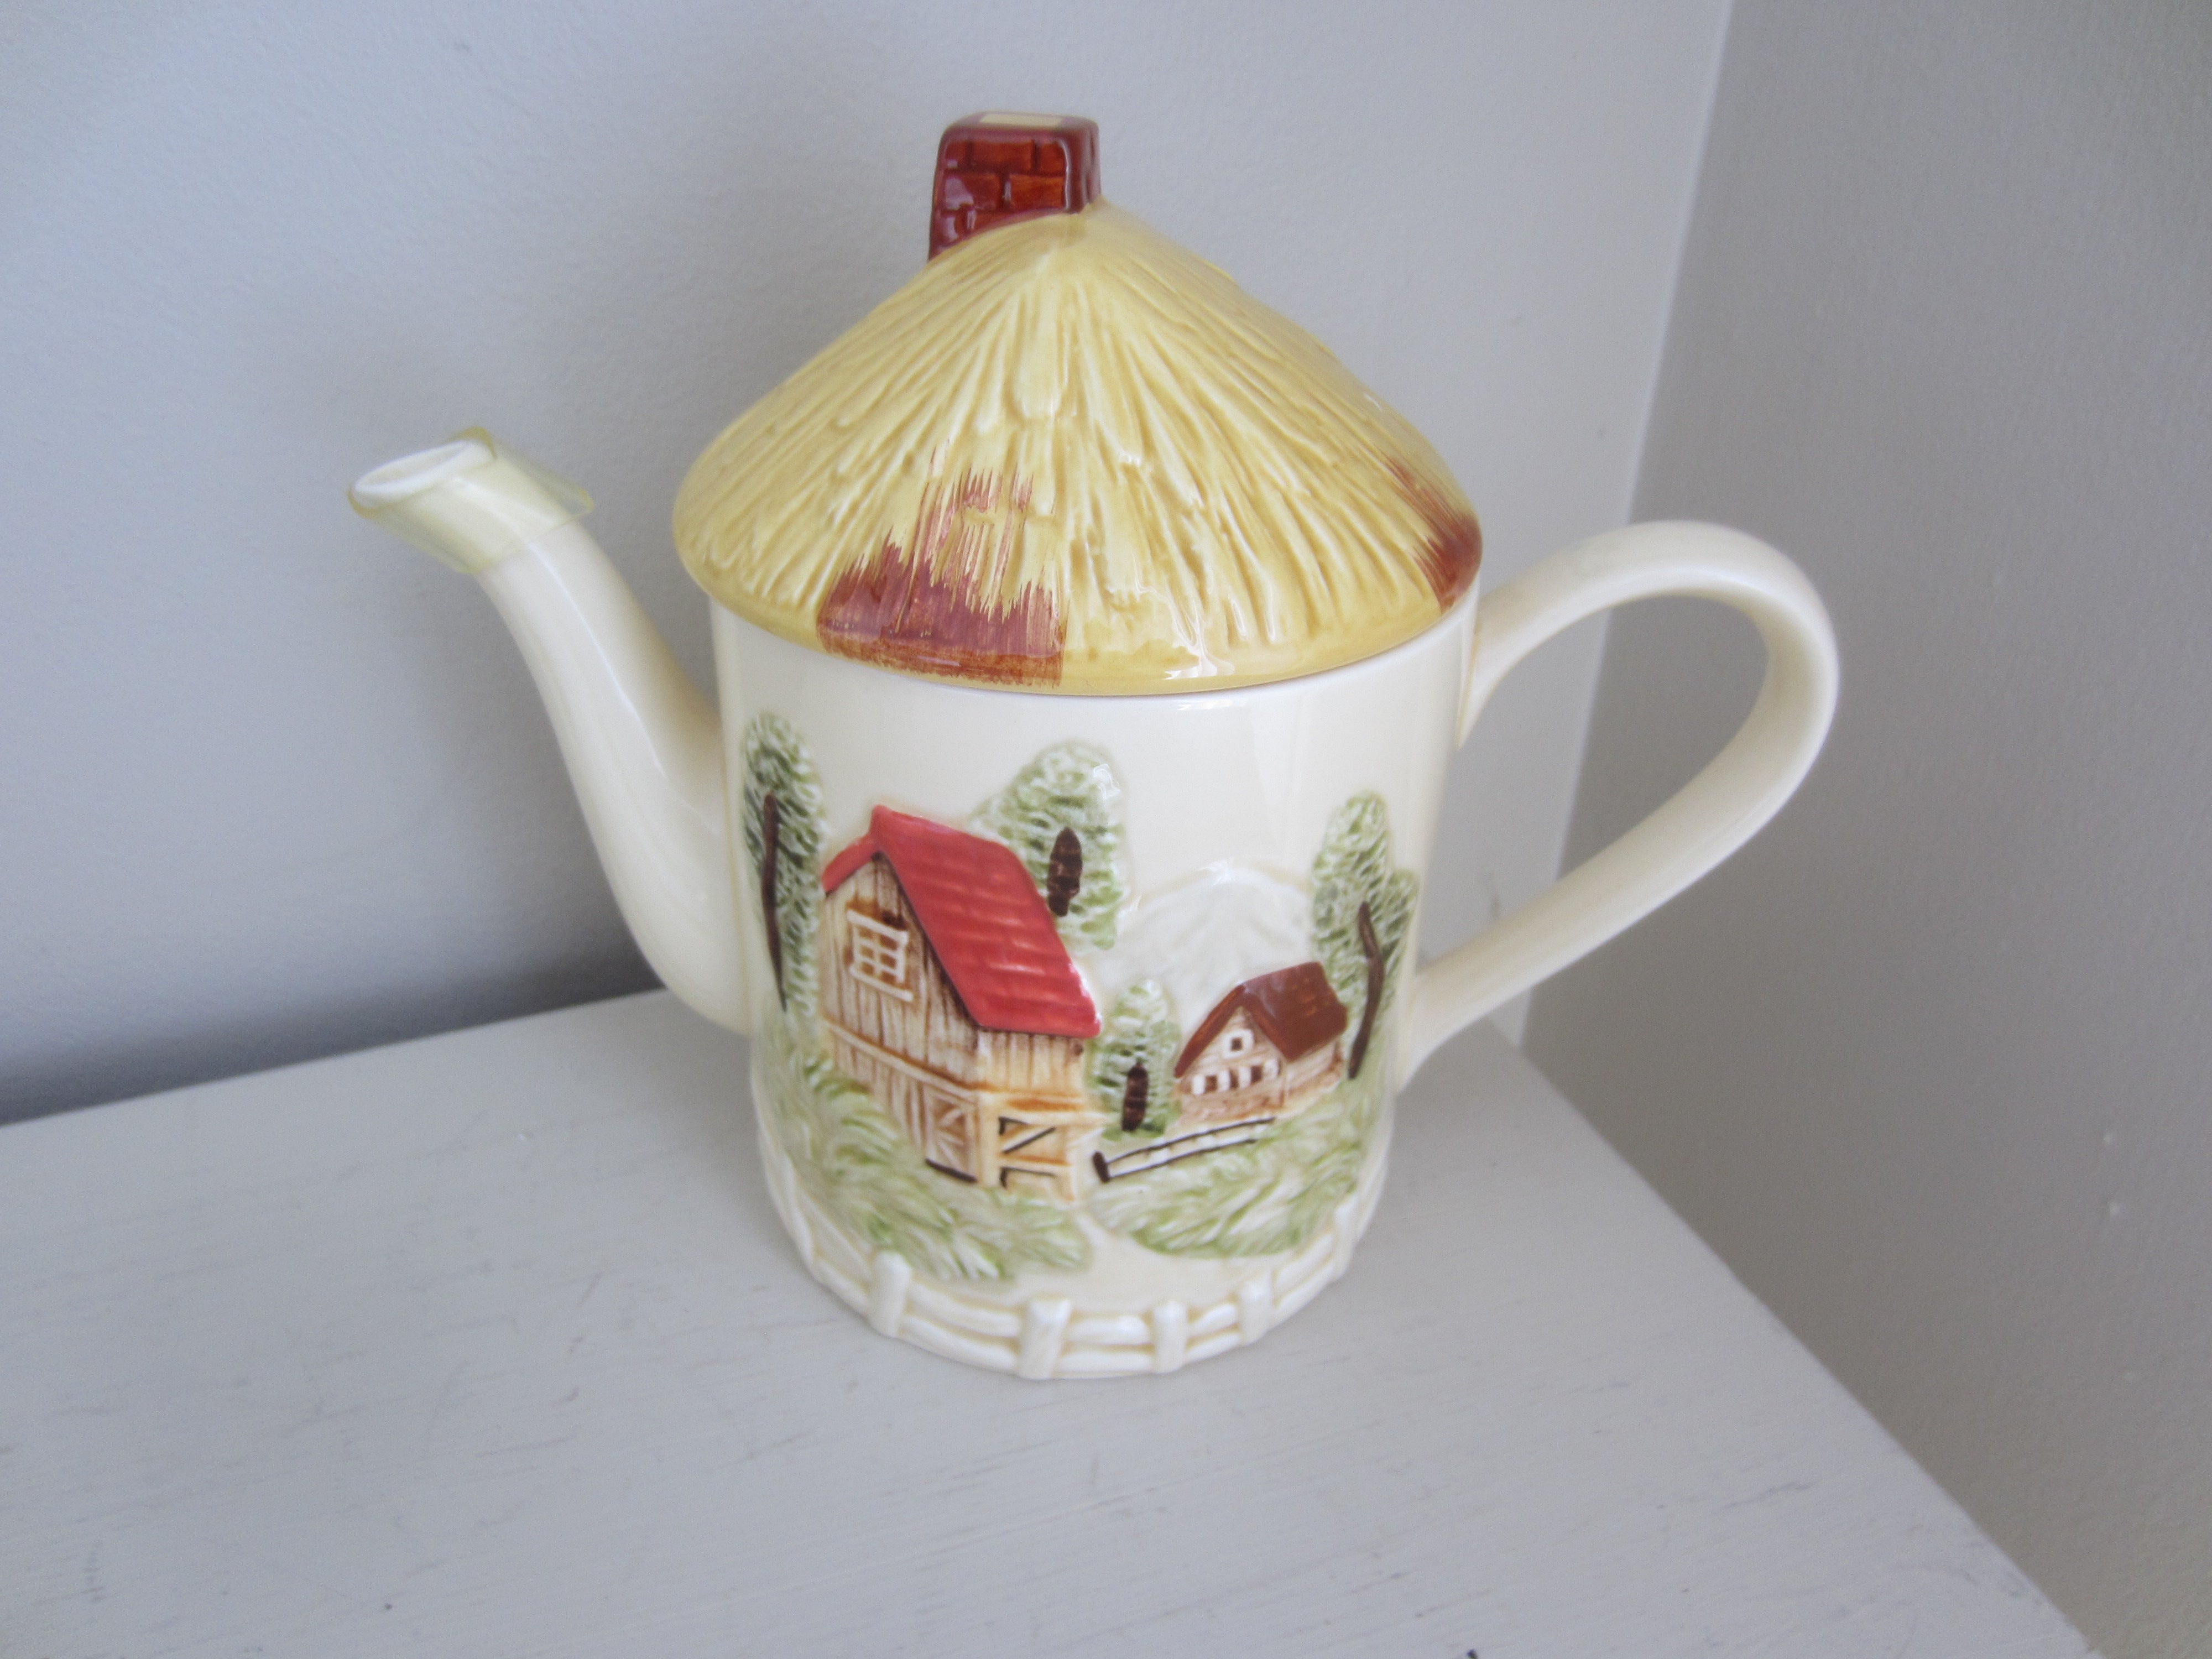 Vintage Ceramic Tea Set with raised Image Japan